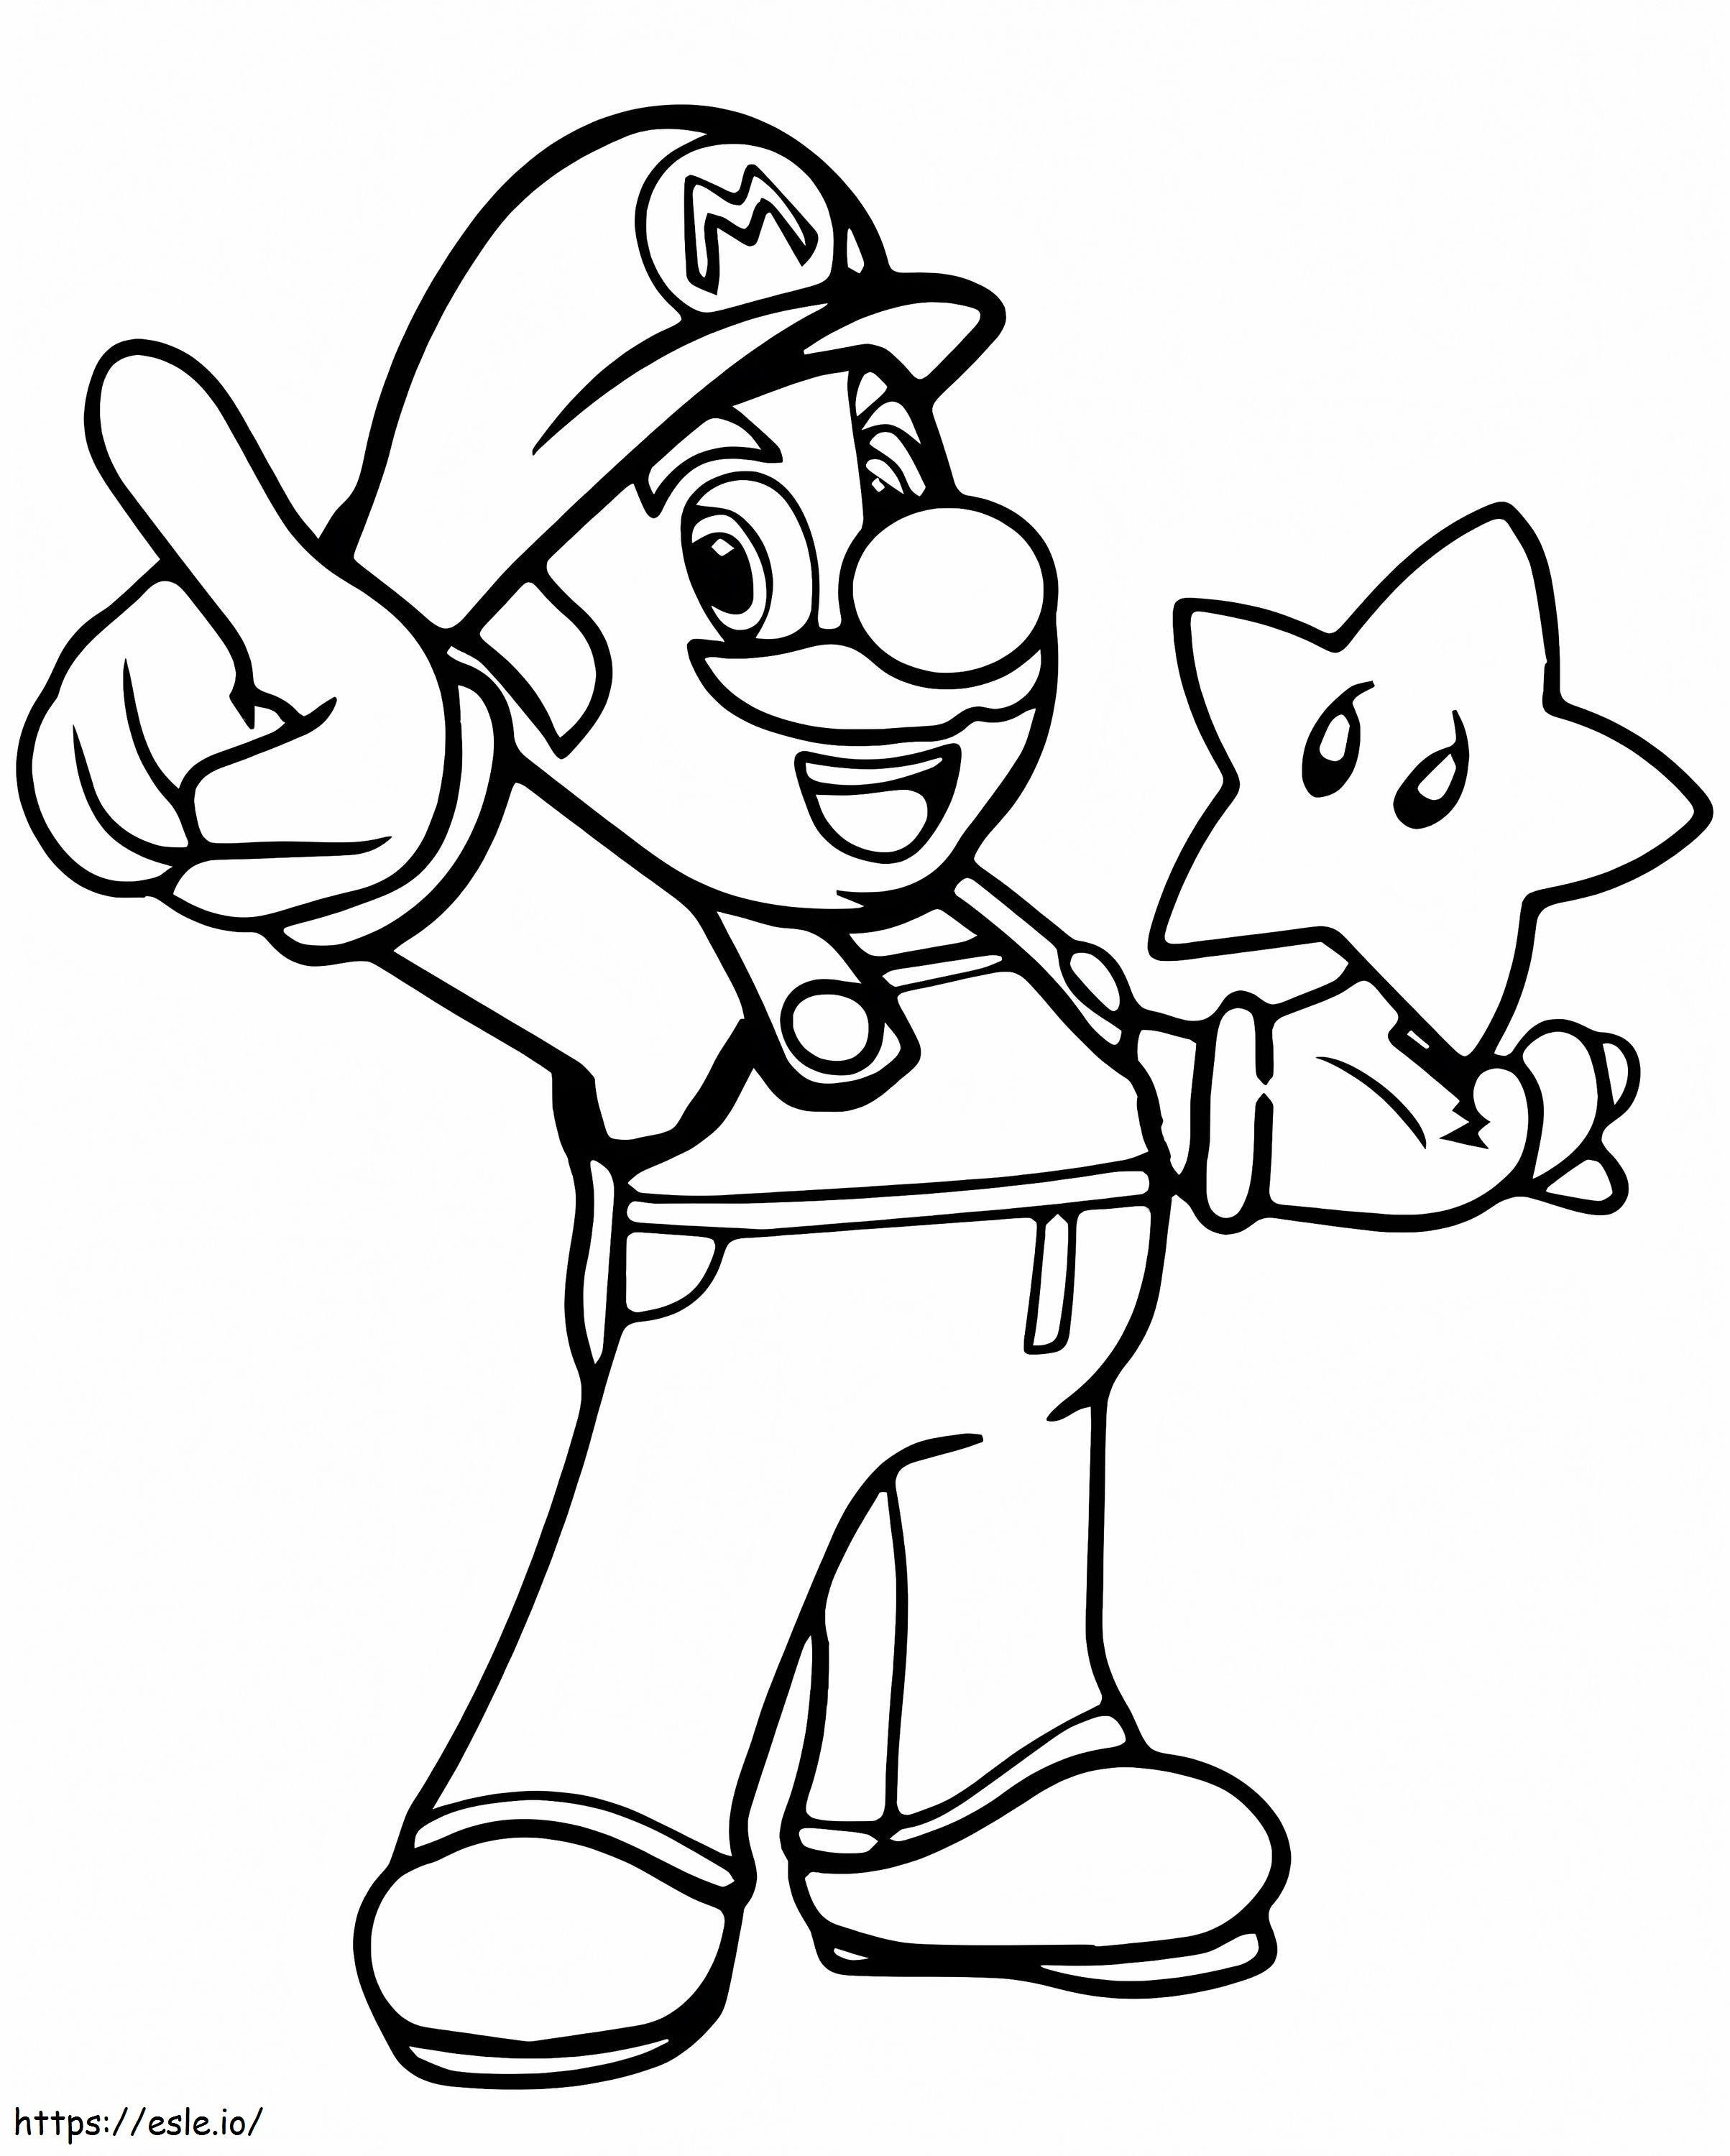 Mario und Stern ausmalbilder